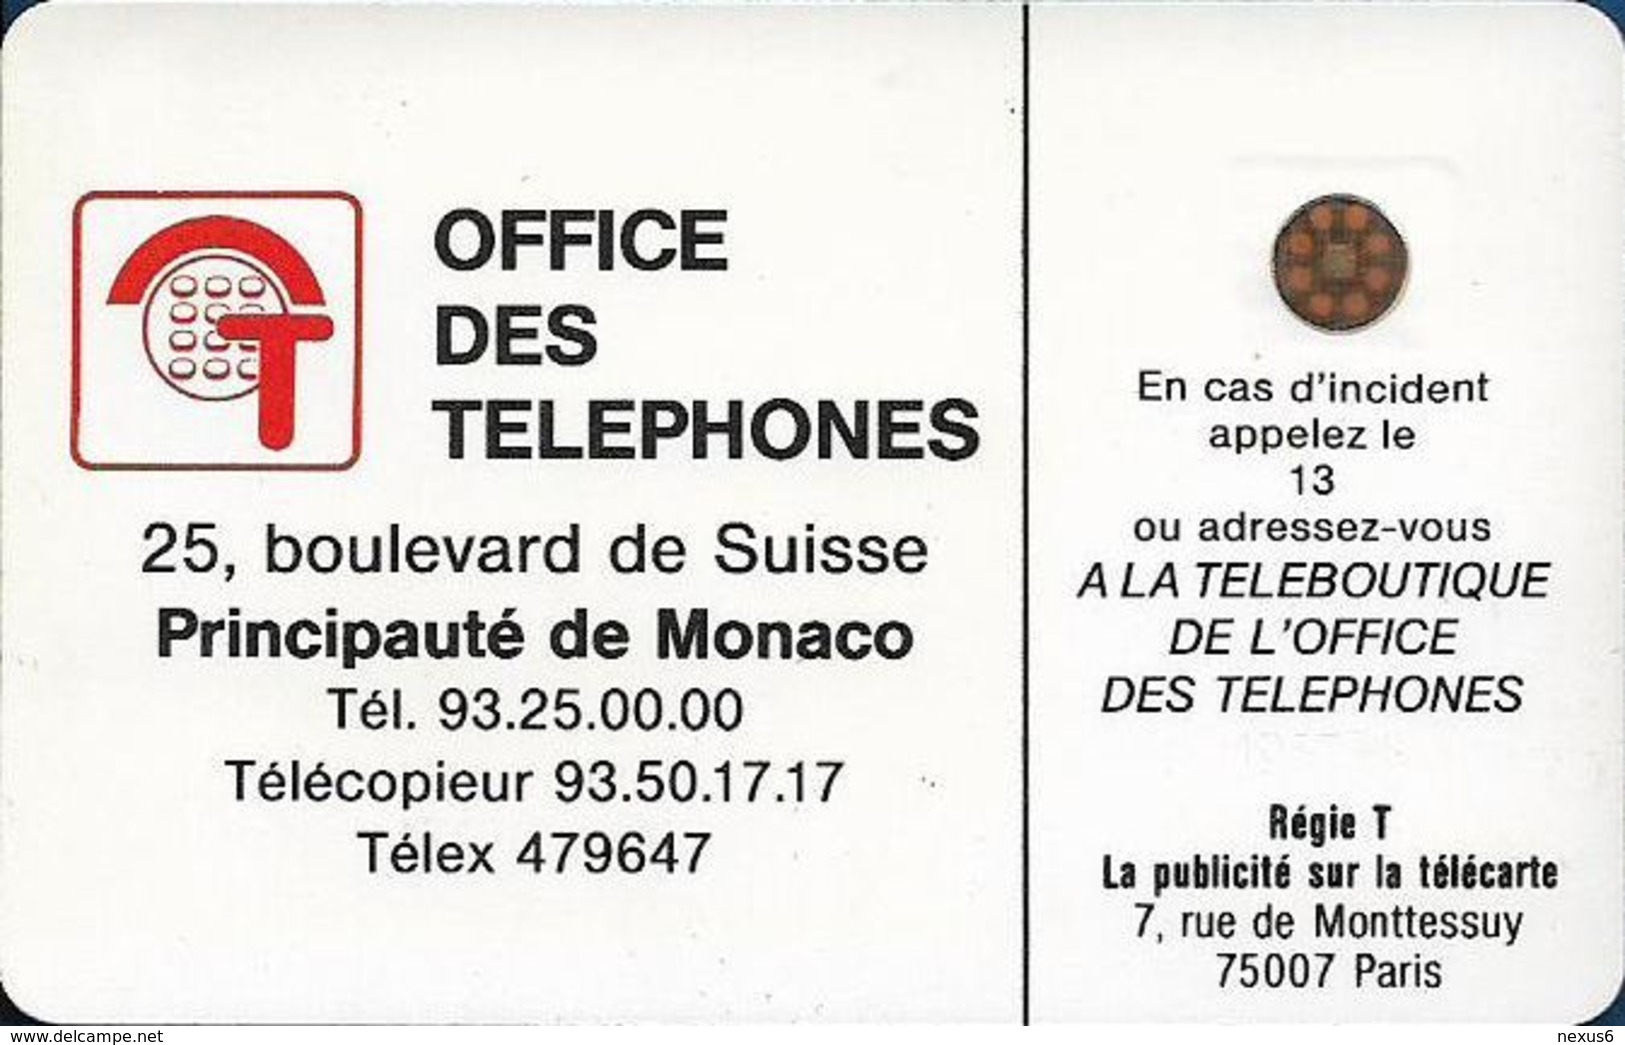 Monaco - MF1 - Rocher De Monaco - Cn. 106771 - 08.1989, SC4 GB, 50Units, 10.200ex, Used - Monaco